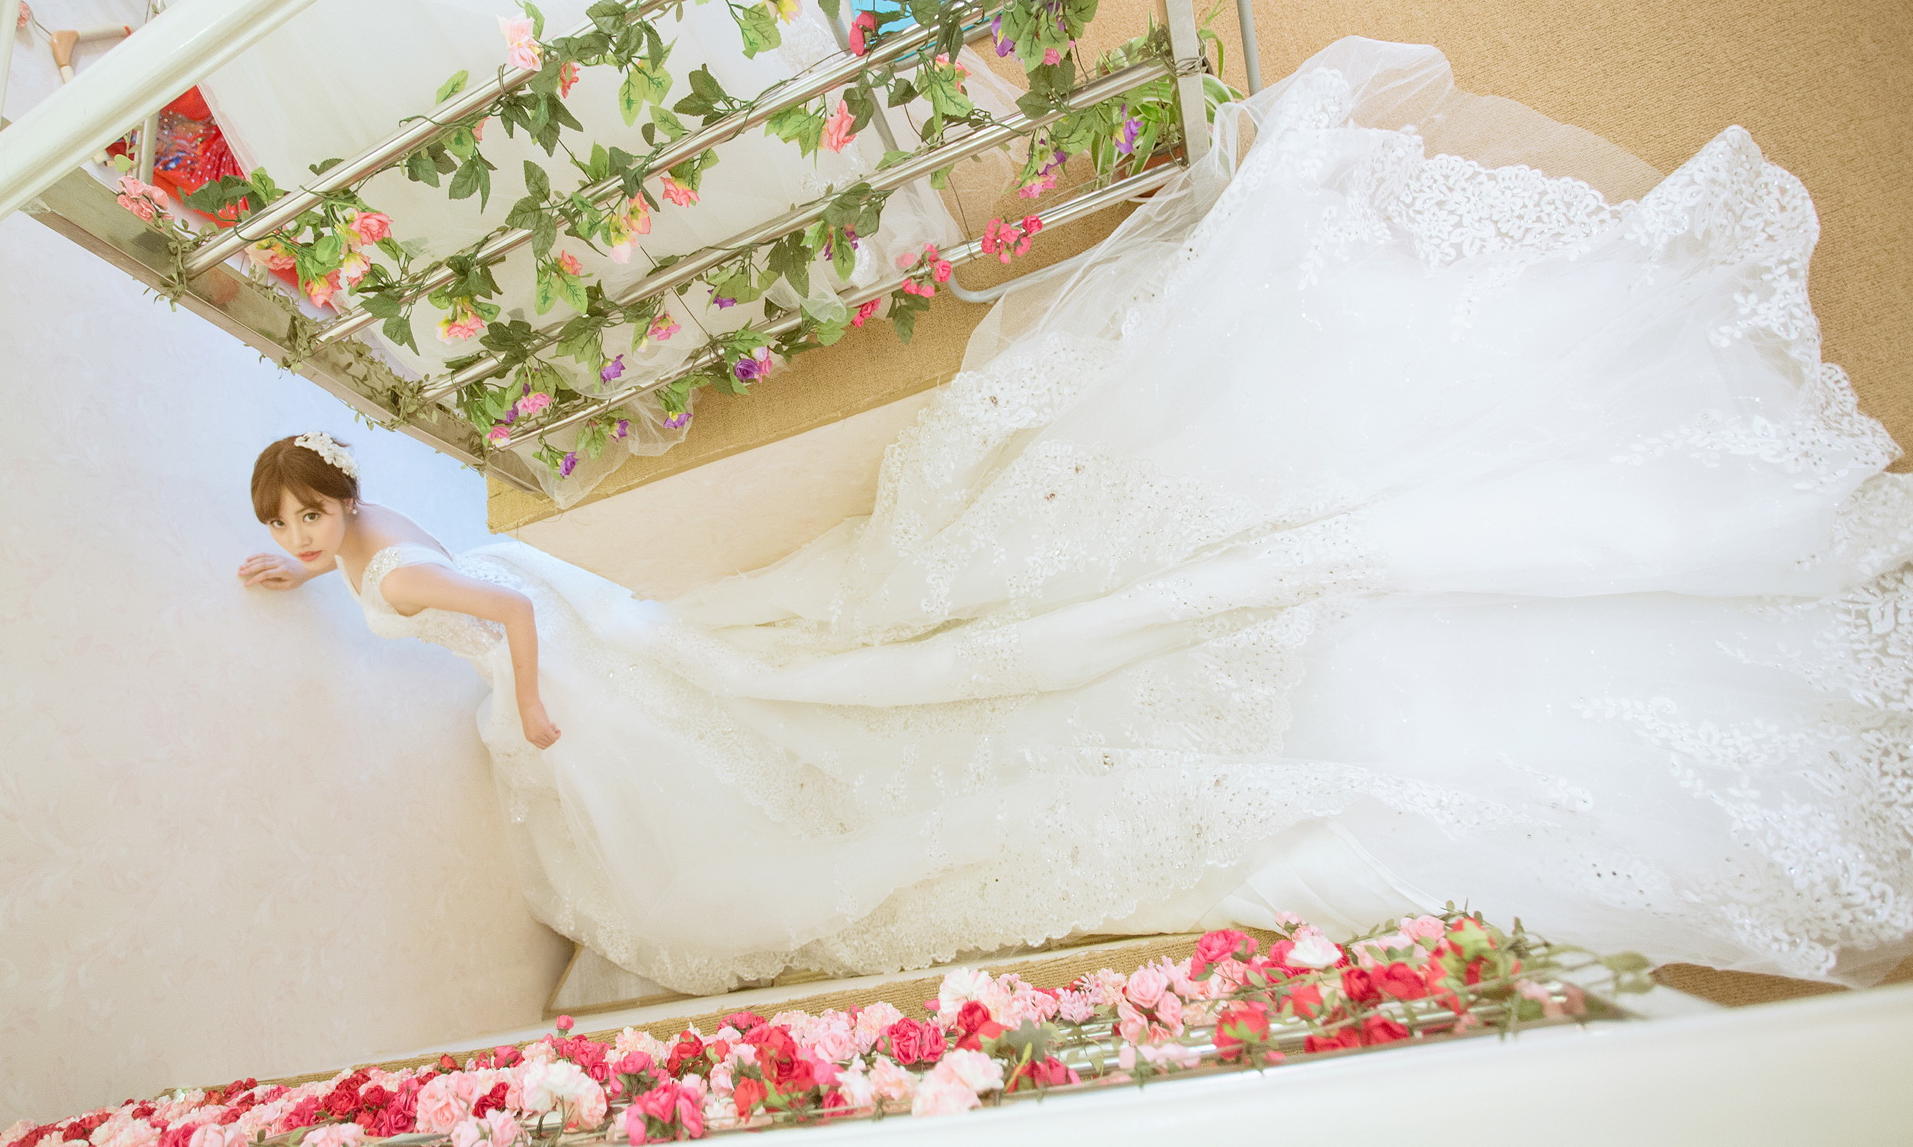 【婚礼购】超值婚礼高级套餐4件+1件伴娘服